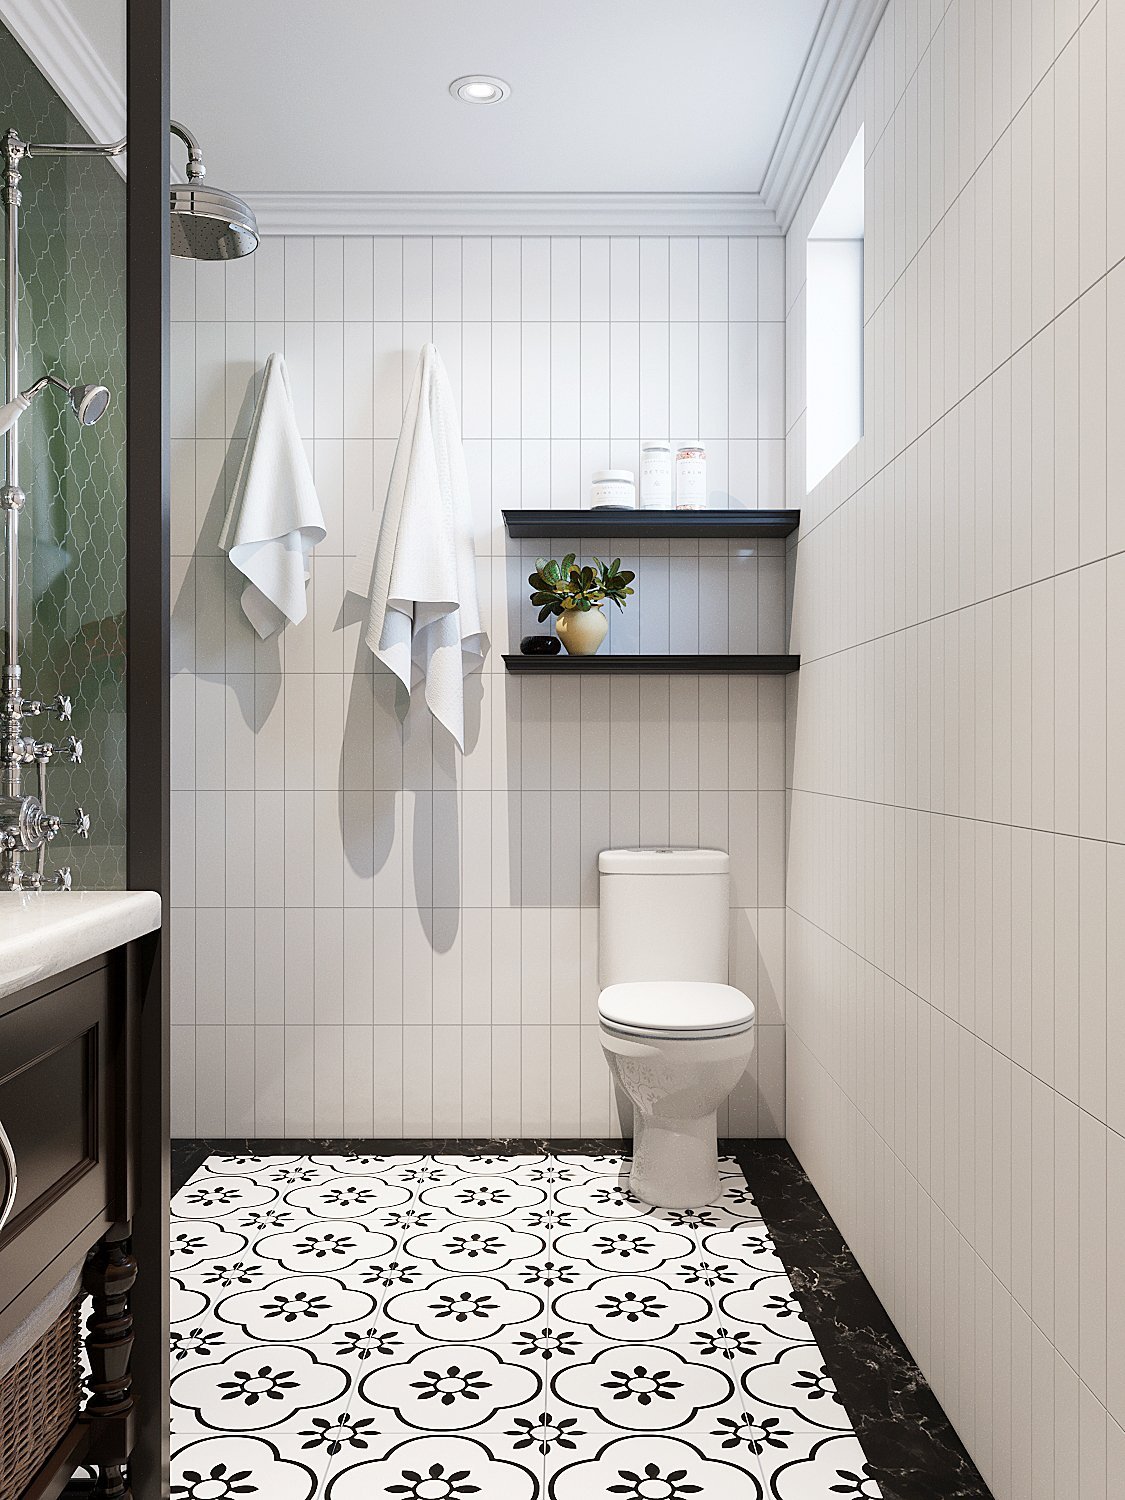 Trong phòng tắm, gạch thẻ màu trắng ốp tường kết hợp hài hòa với gạch bông hoa văn lát sàn tạo thành tổng thể có tính thẩm mỹ cao, gợi cảm giác rộng thoáng hơn.